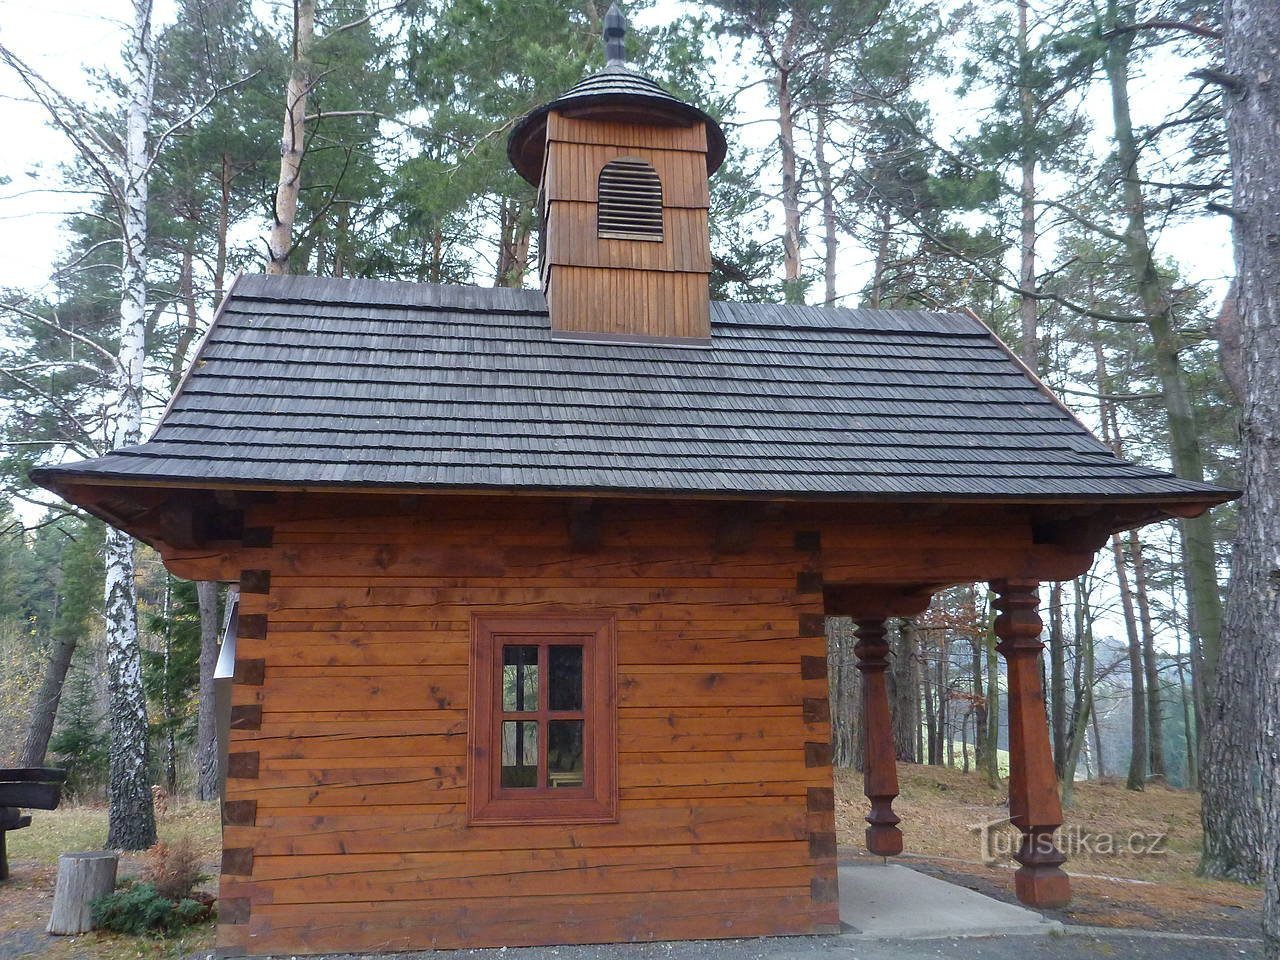 Nhà nguyện bằng gỗ của Thánh Hubert trên Valašská Senicá.